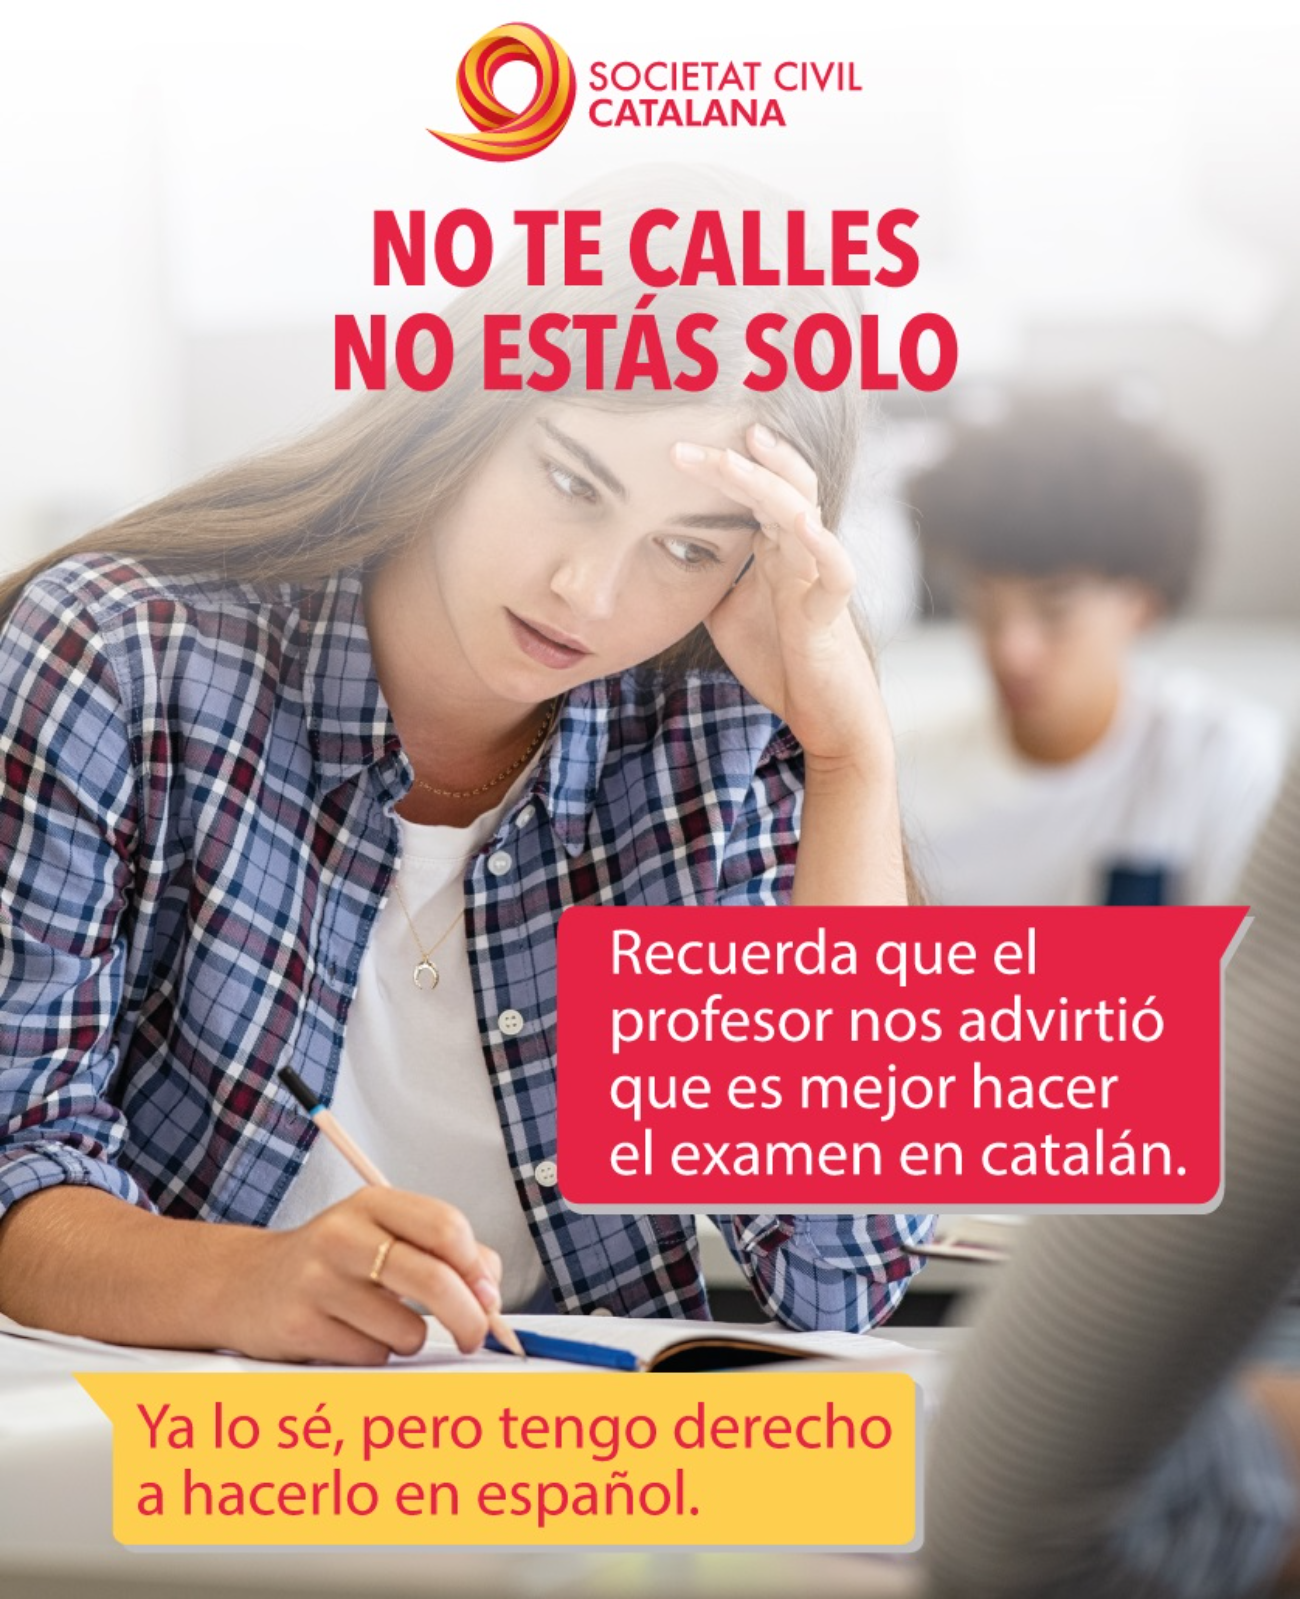 La campanya espanyolista que anima a rebel·lar-se contra "l'eliminació del castellà"